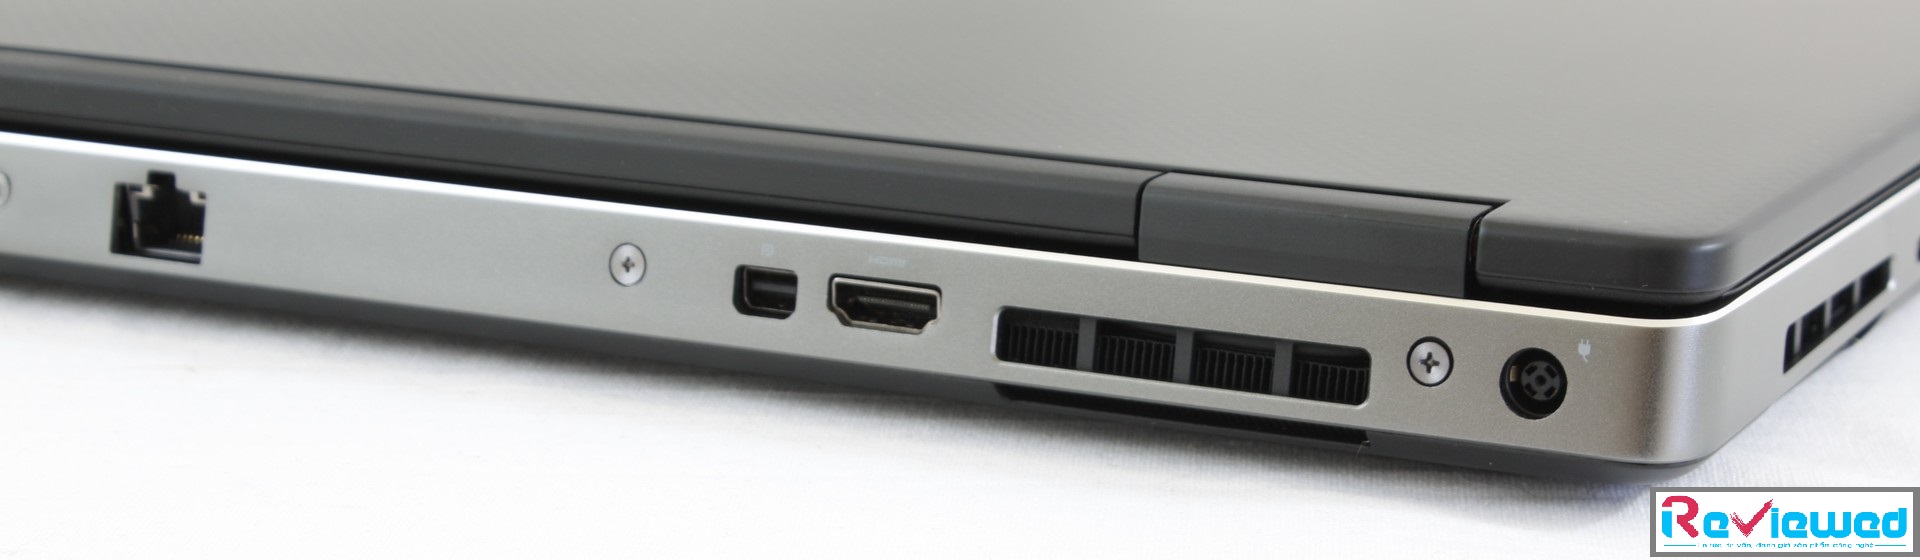 Đánh giá Dell Precision 7530: Bước tiến về thiết kế, hiệu năng so với trước đây, Chuyên trang tư vấn Laptop